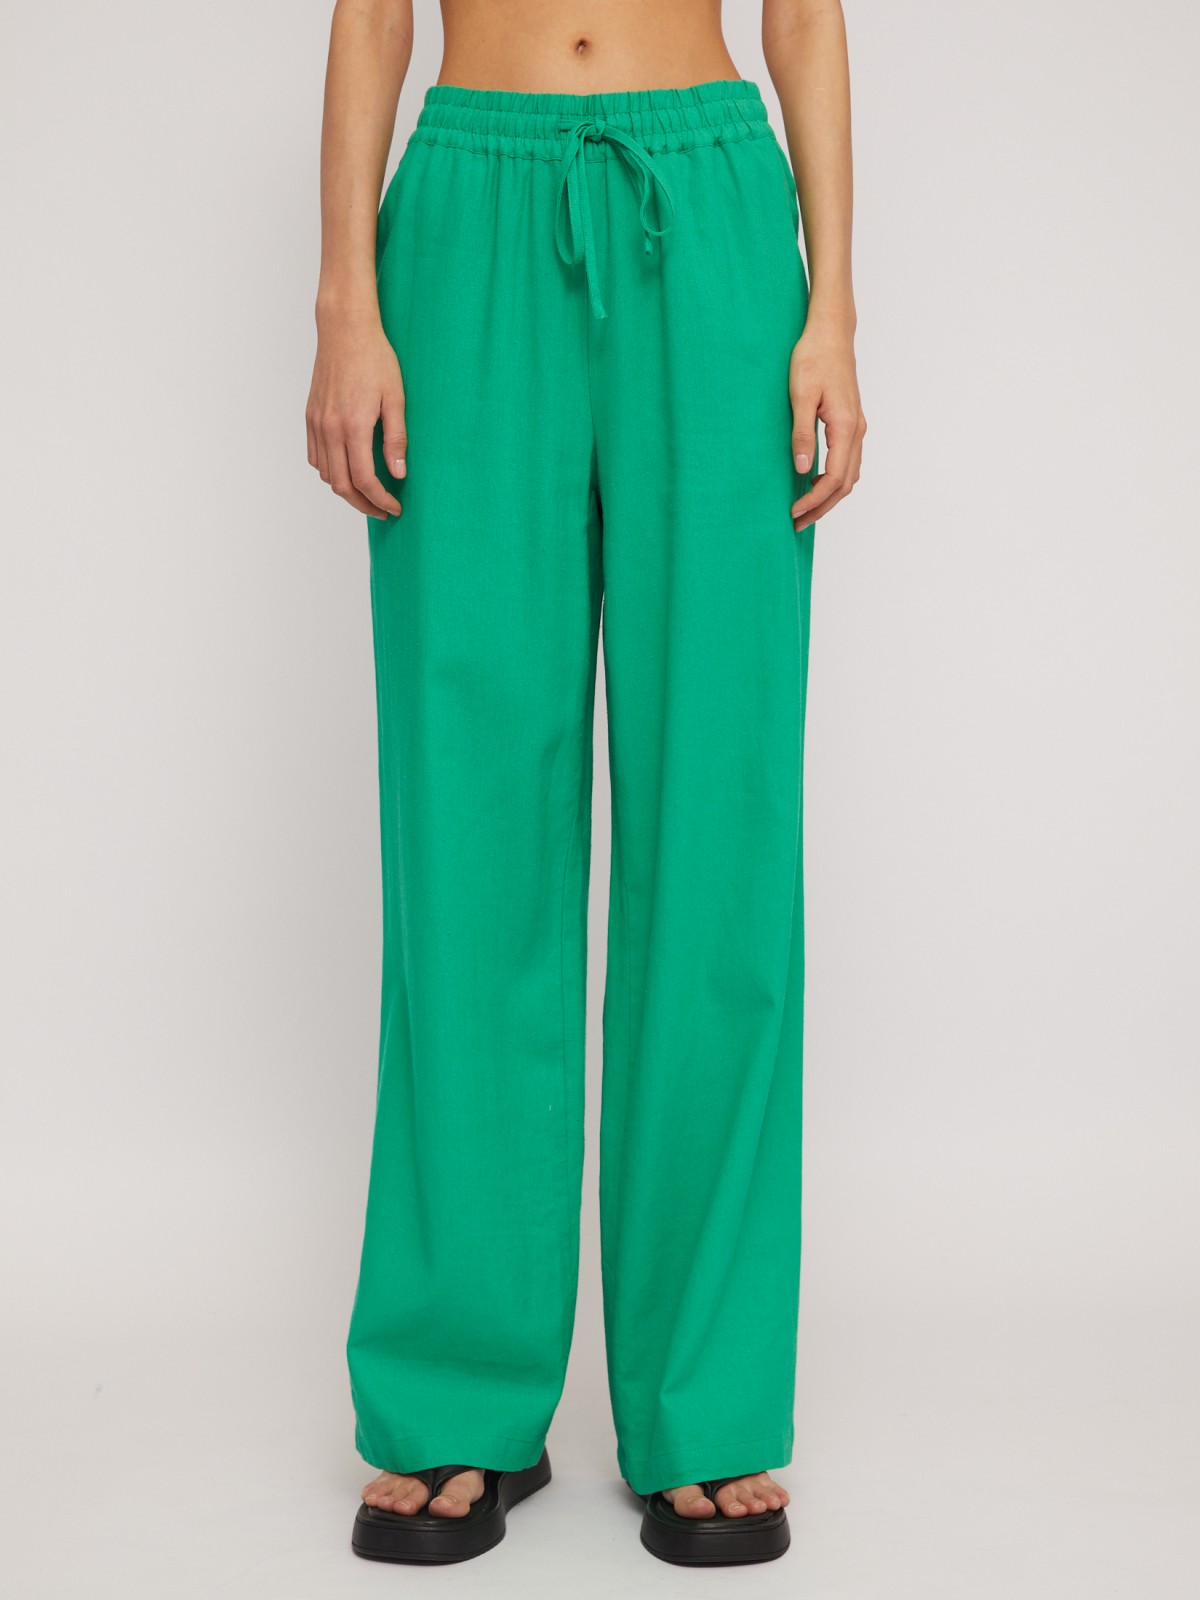 Льняные брюки на резинке с кулиской zolla 024247362053, цвет зеленый, размер S - фото 5